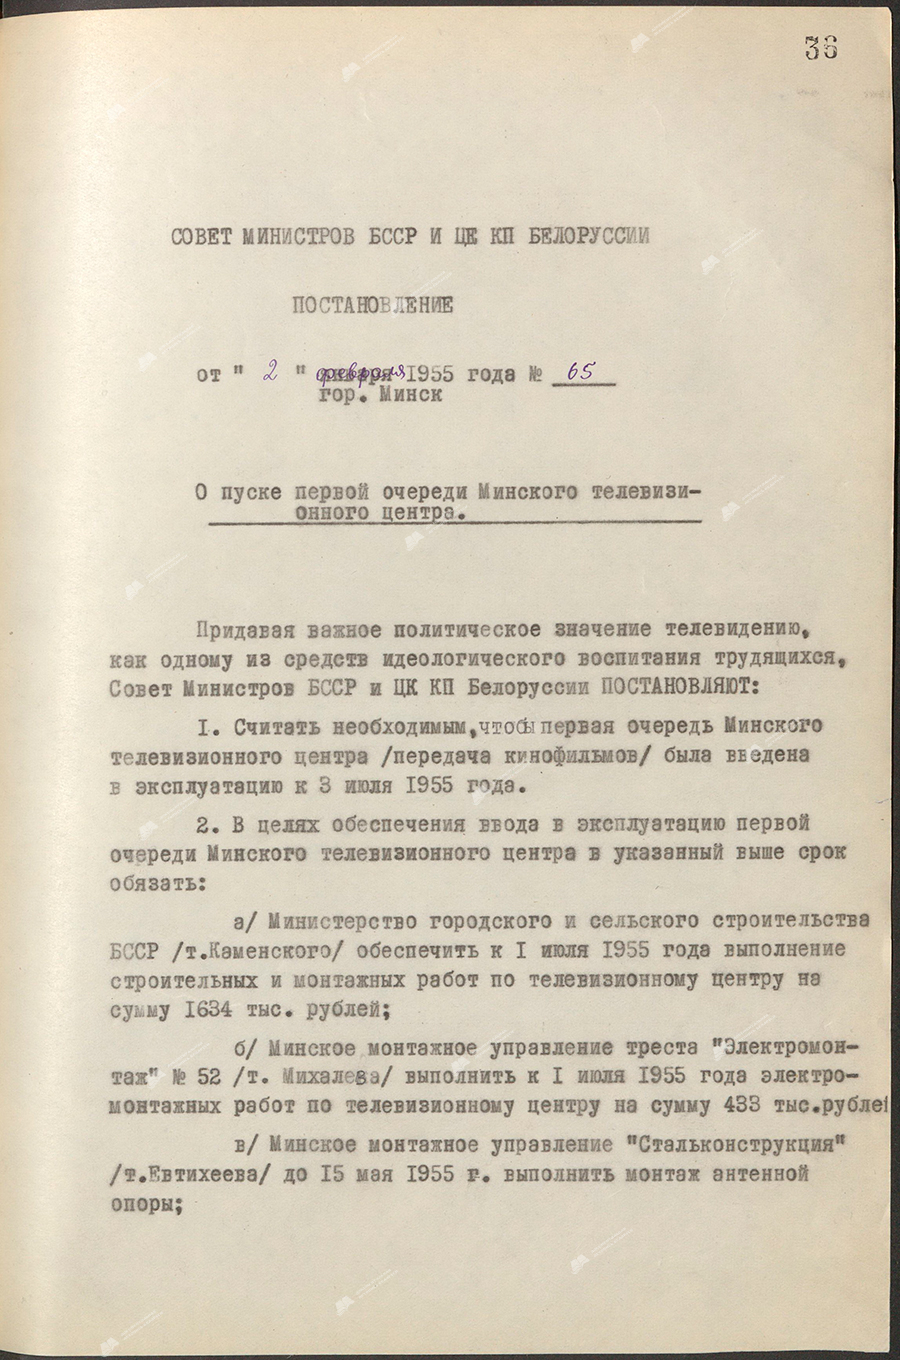 Beschluss Nr. 65 des Ministerrats der BSSR und des Zentralkomitees der Kommunistischen Partei Weißrusslands «Über den Start der ersten Etappe des Minsker Fernsehzentrums»-с. 0